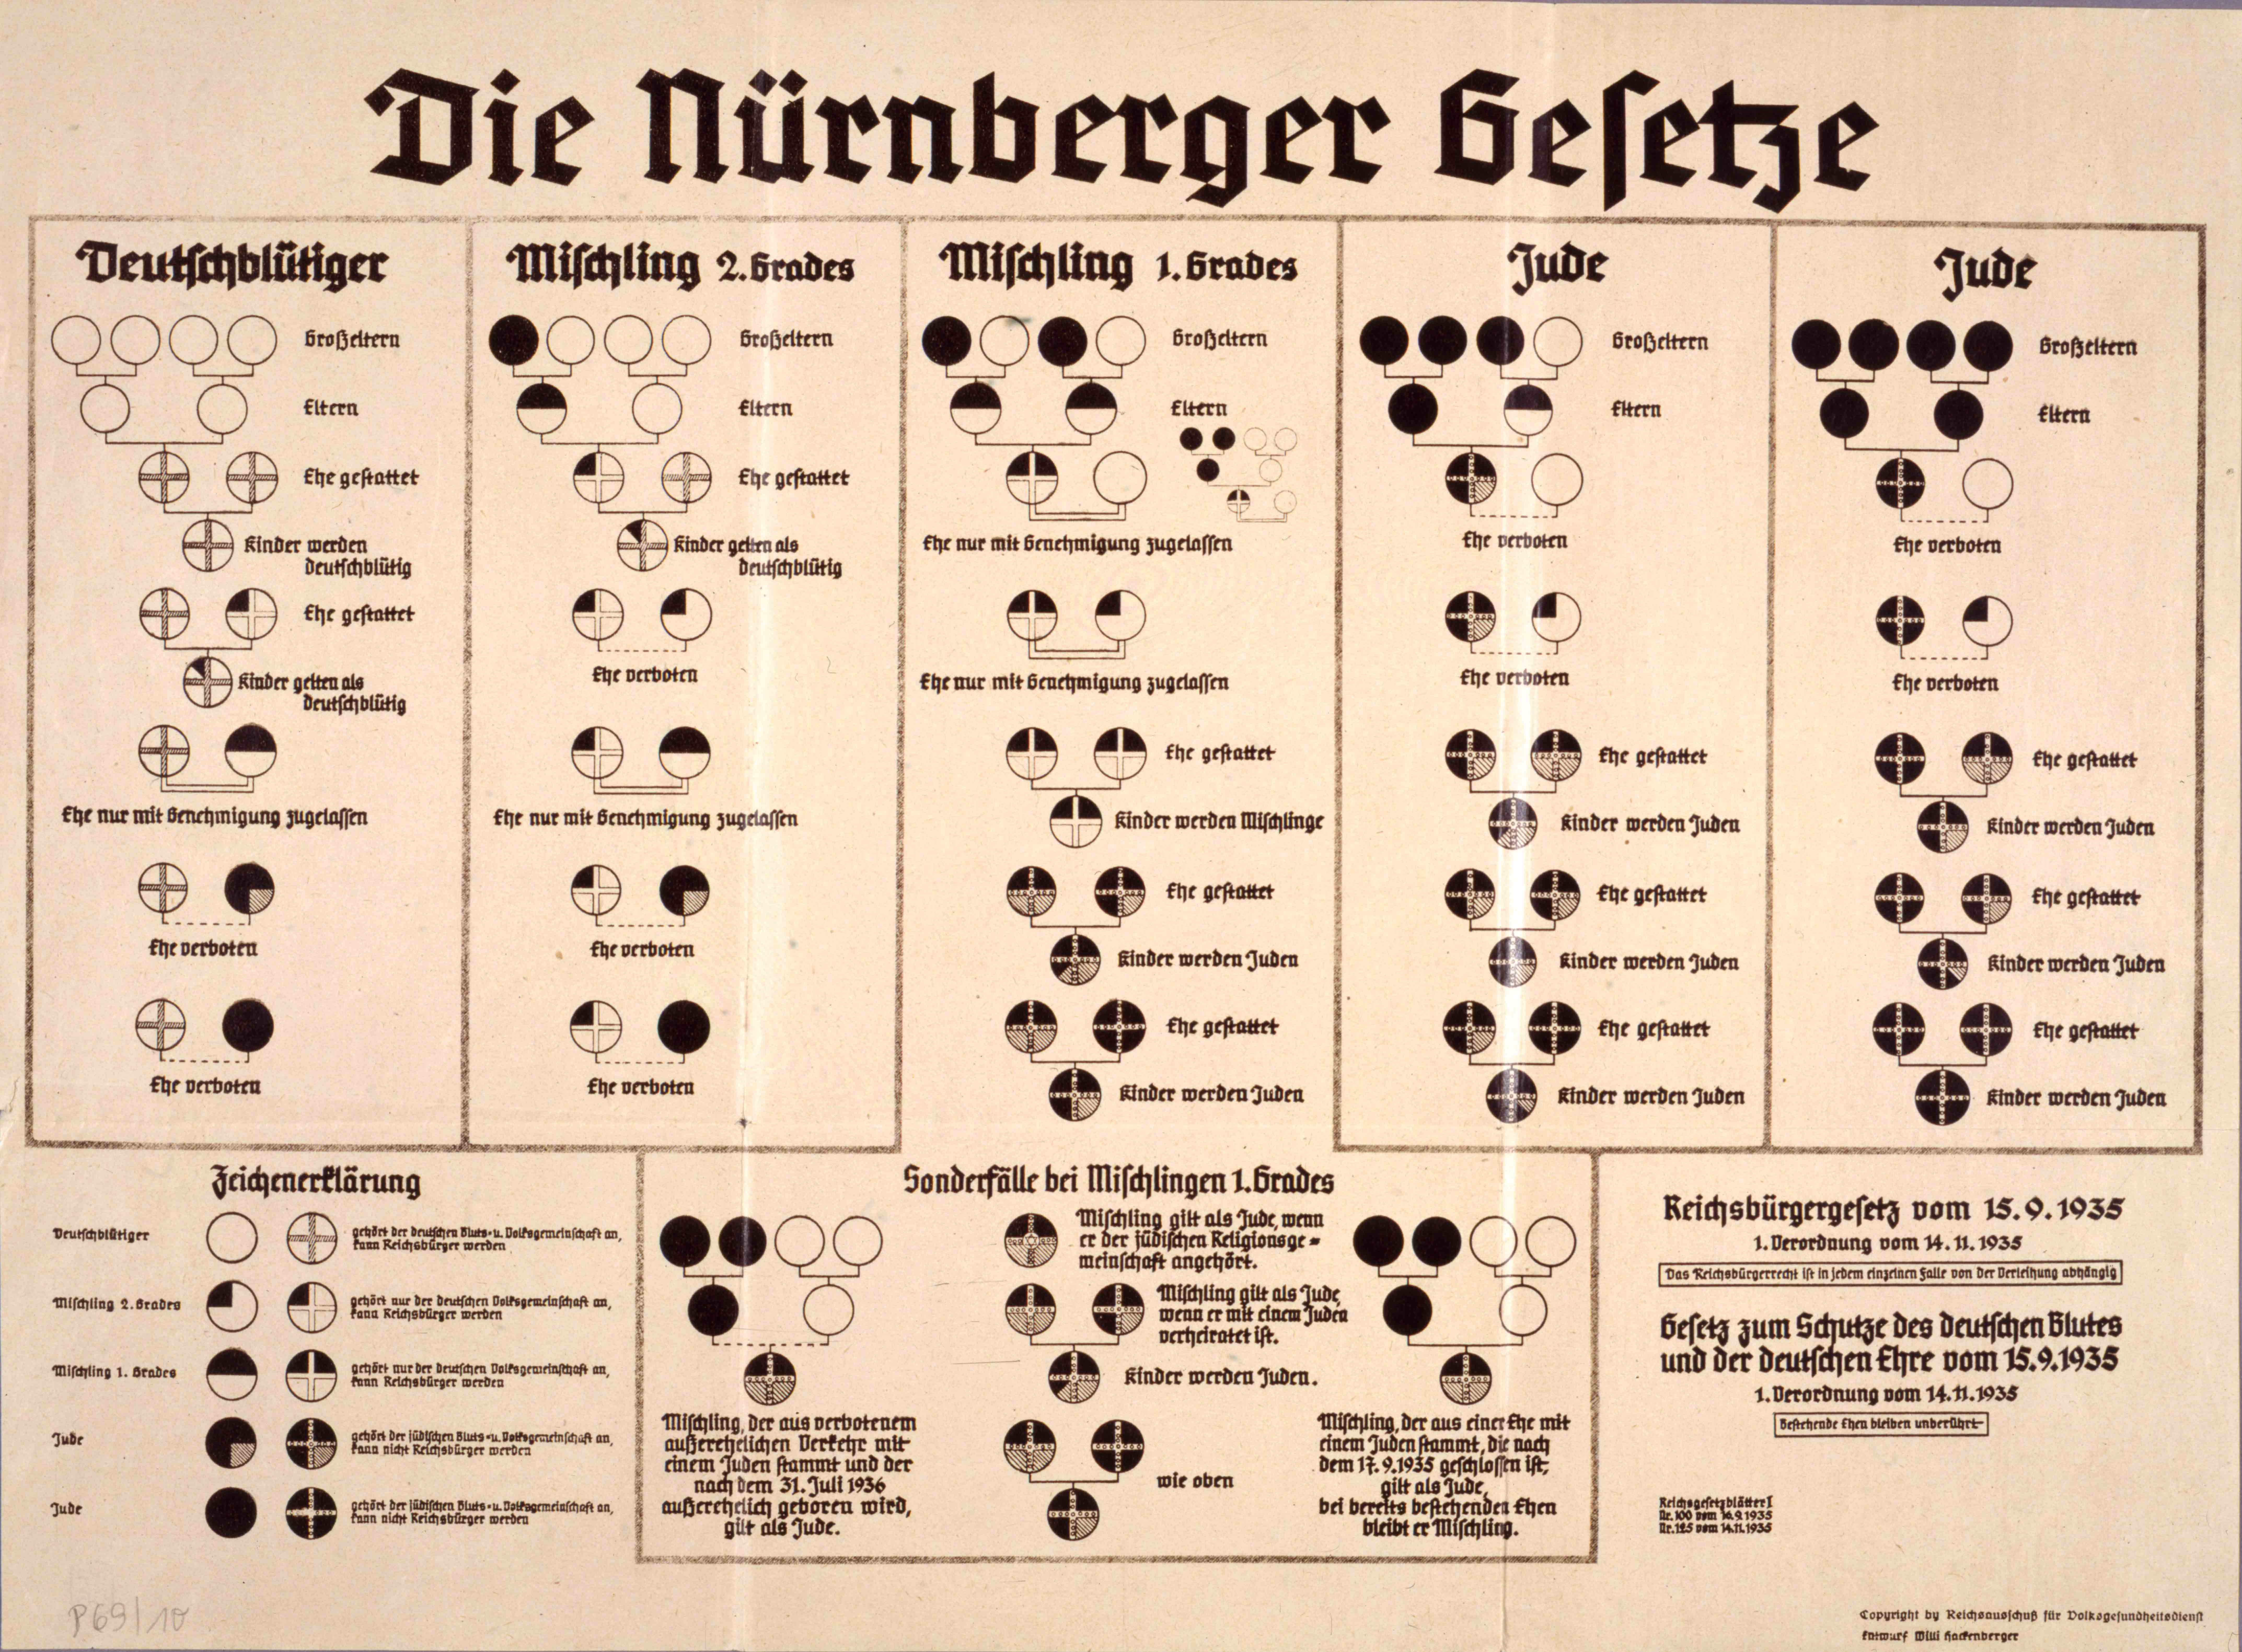 LeMO Kapitel - NS-Regime - Ausgrenzung und Verfolgung - Nürnberger Gesetze  1935